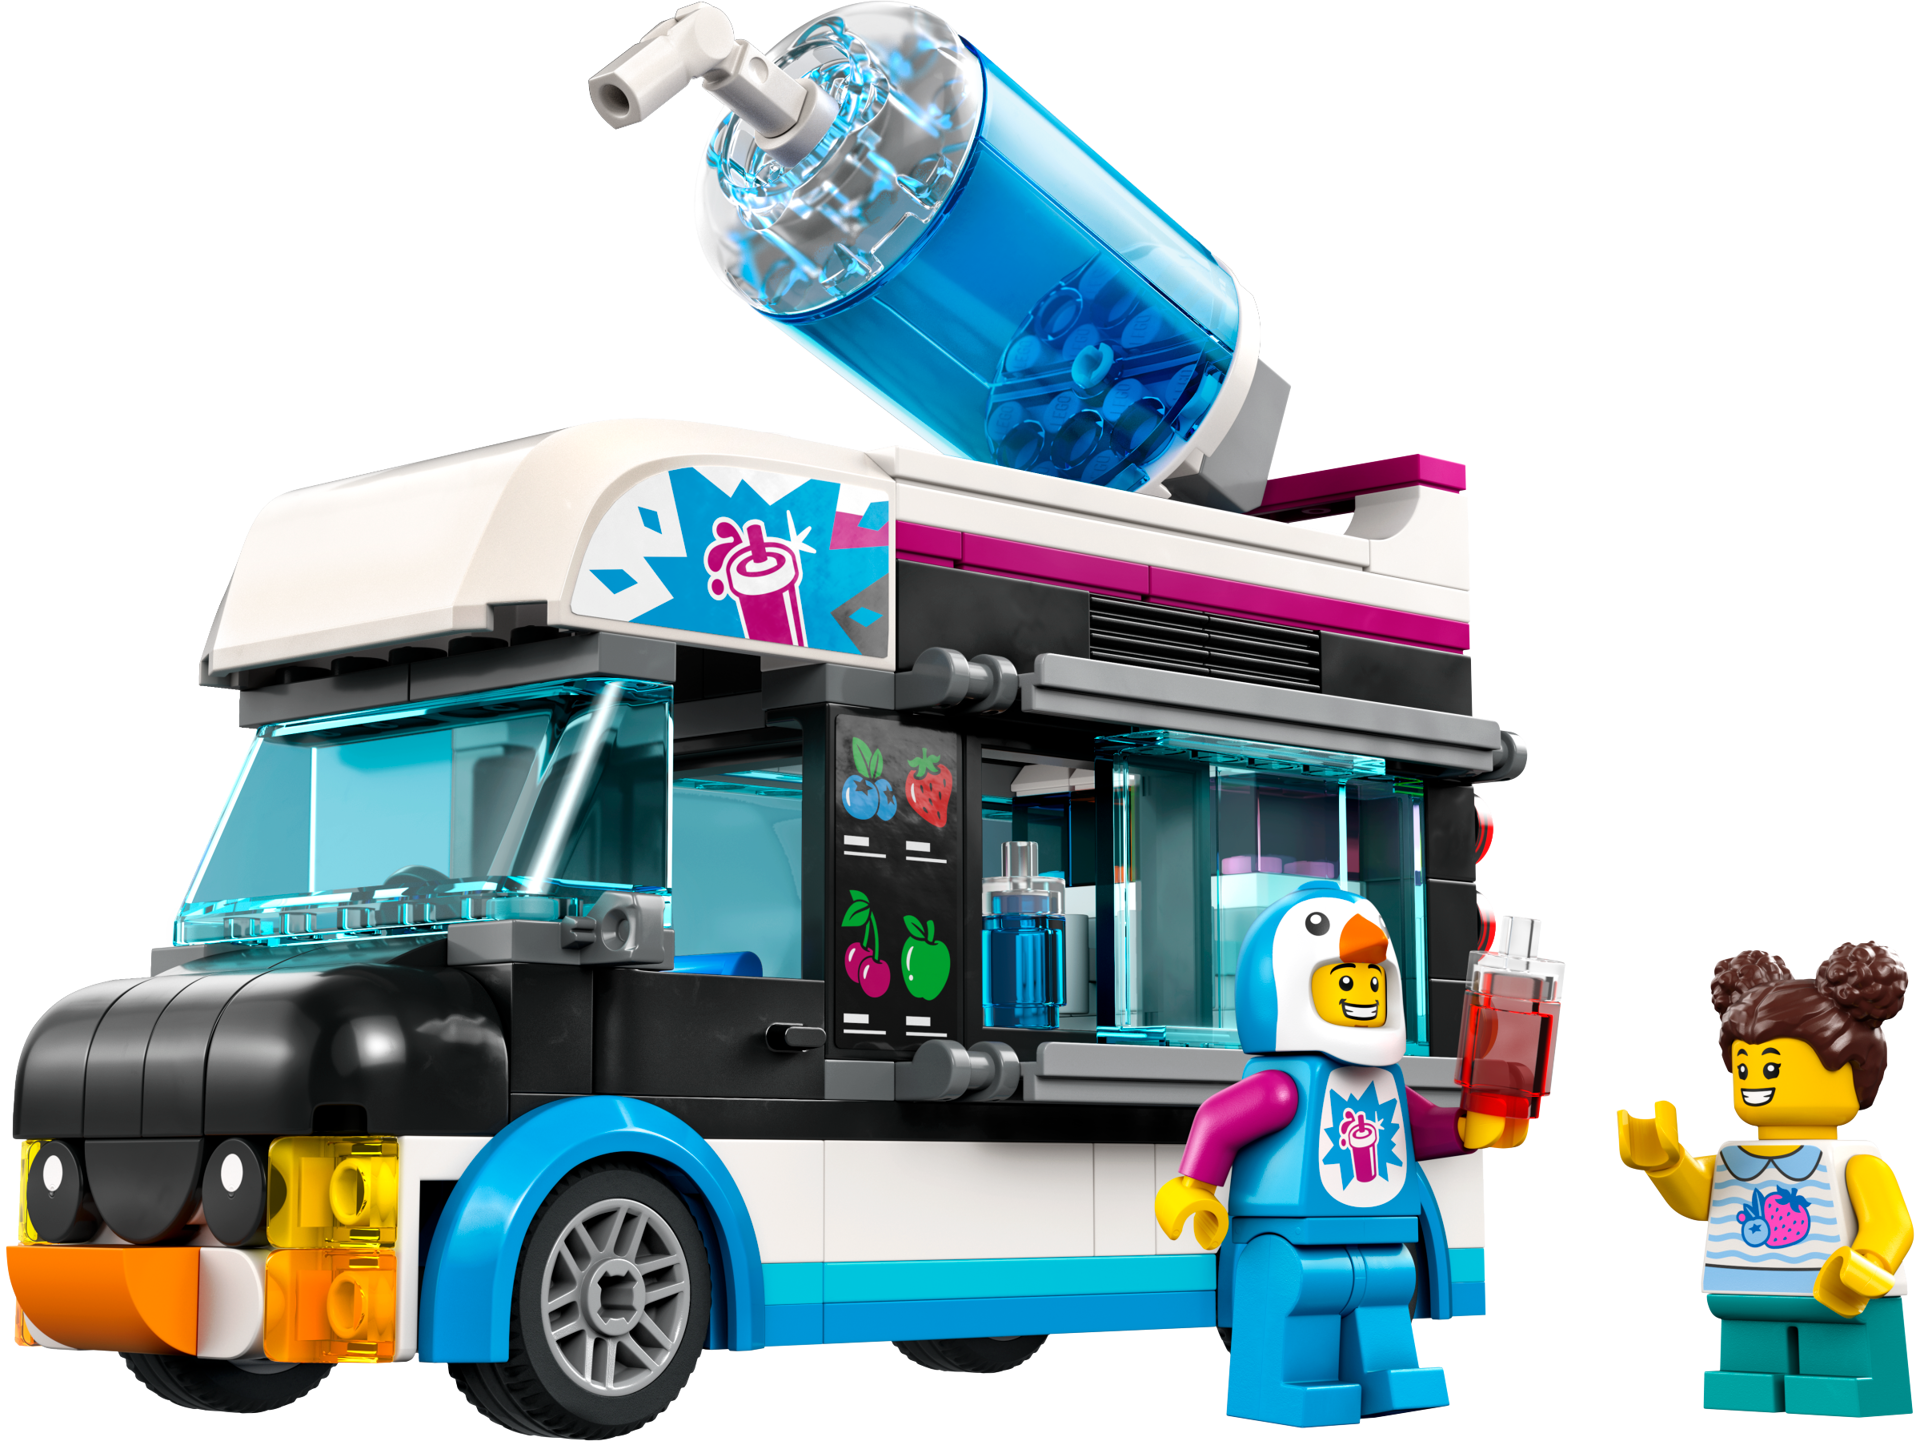 LEGO® City - Camioneta-pinguin cu granita 60384, 194 piese